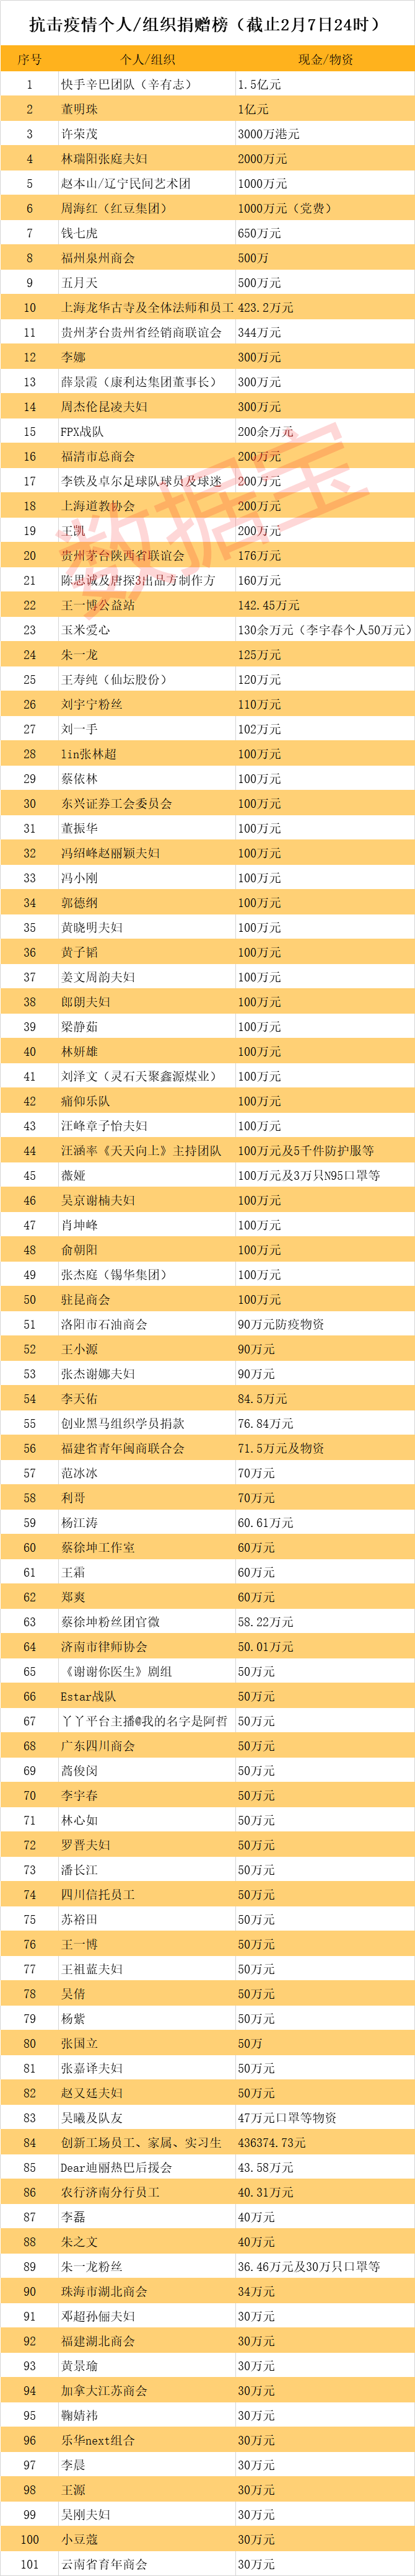 2020年各校捐赠排名_独家发布!2020软科中国大学排名系列:生均学校收入排